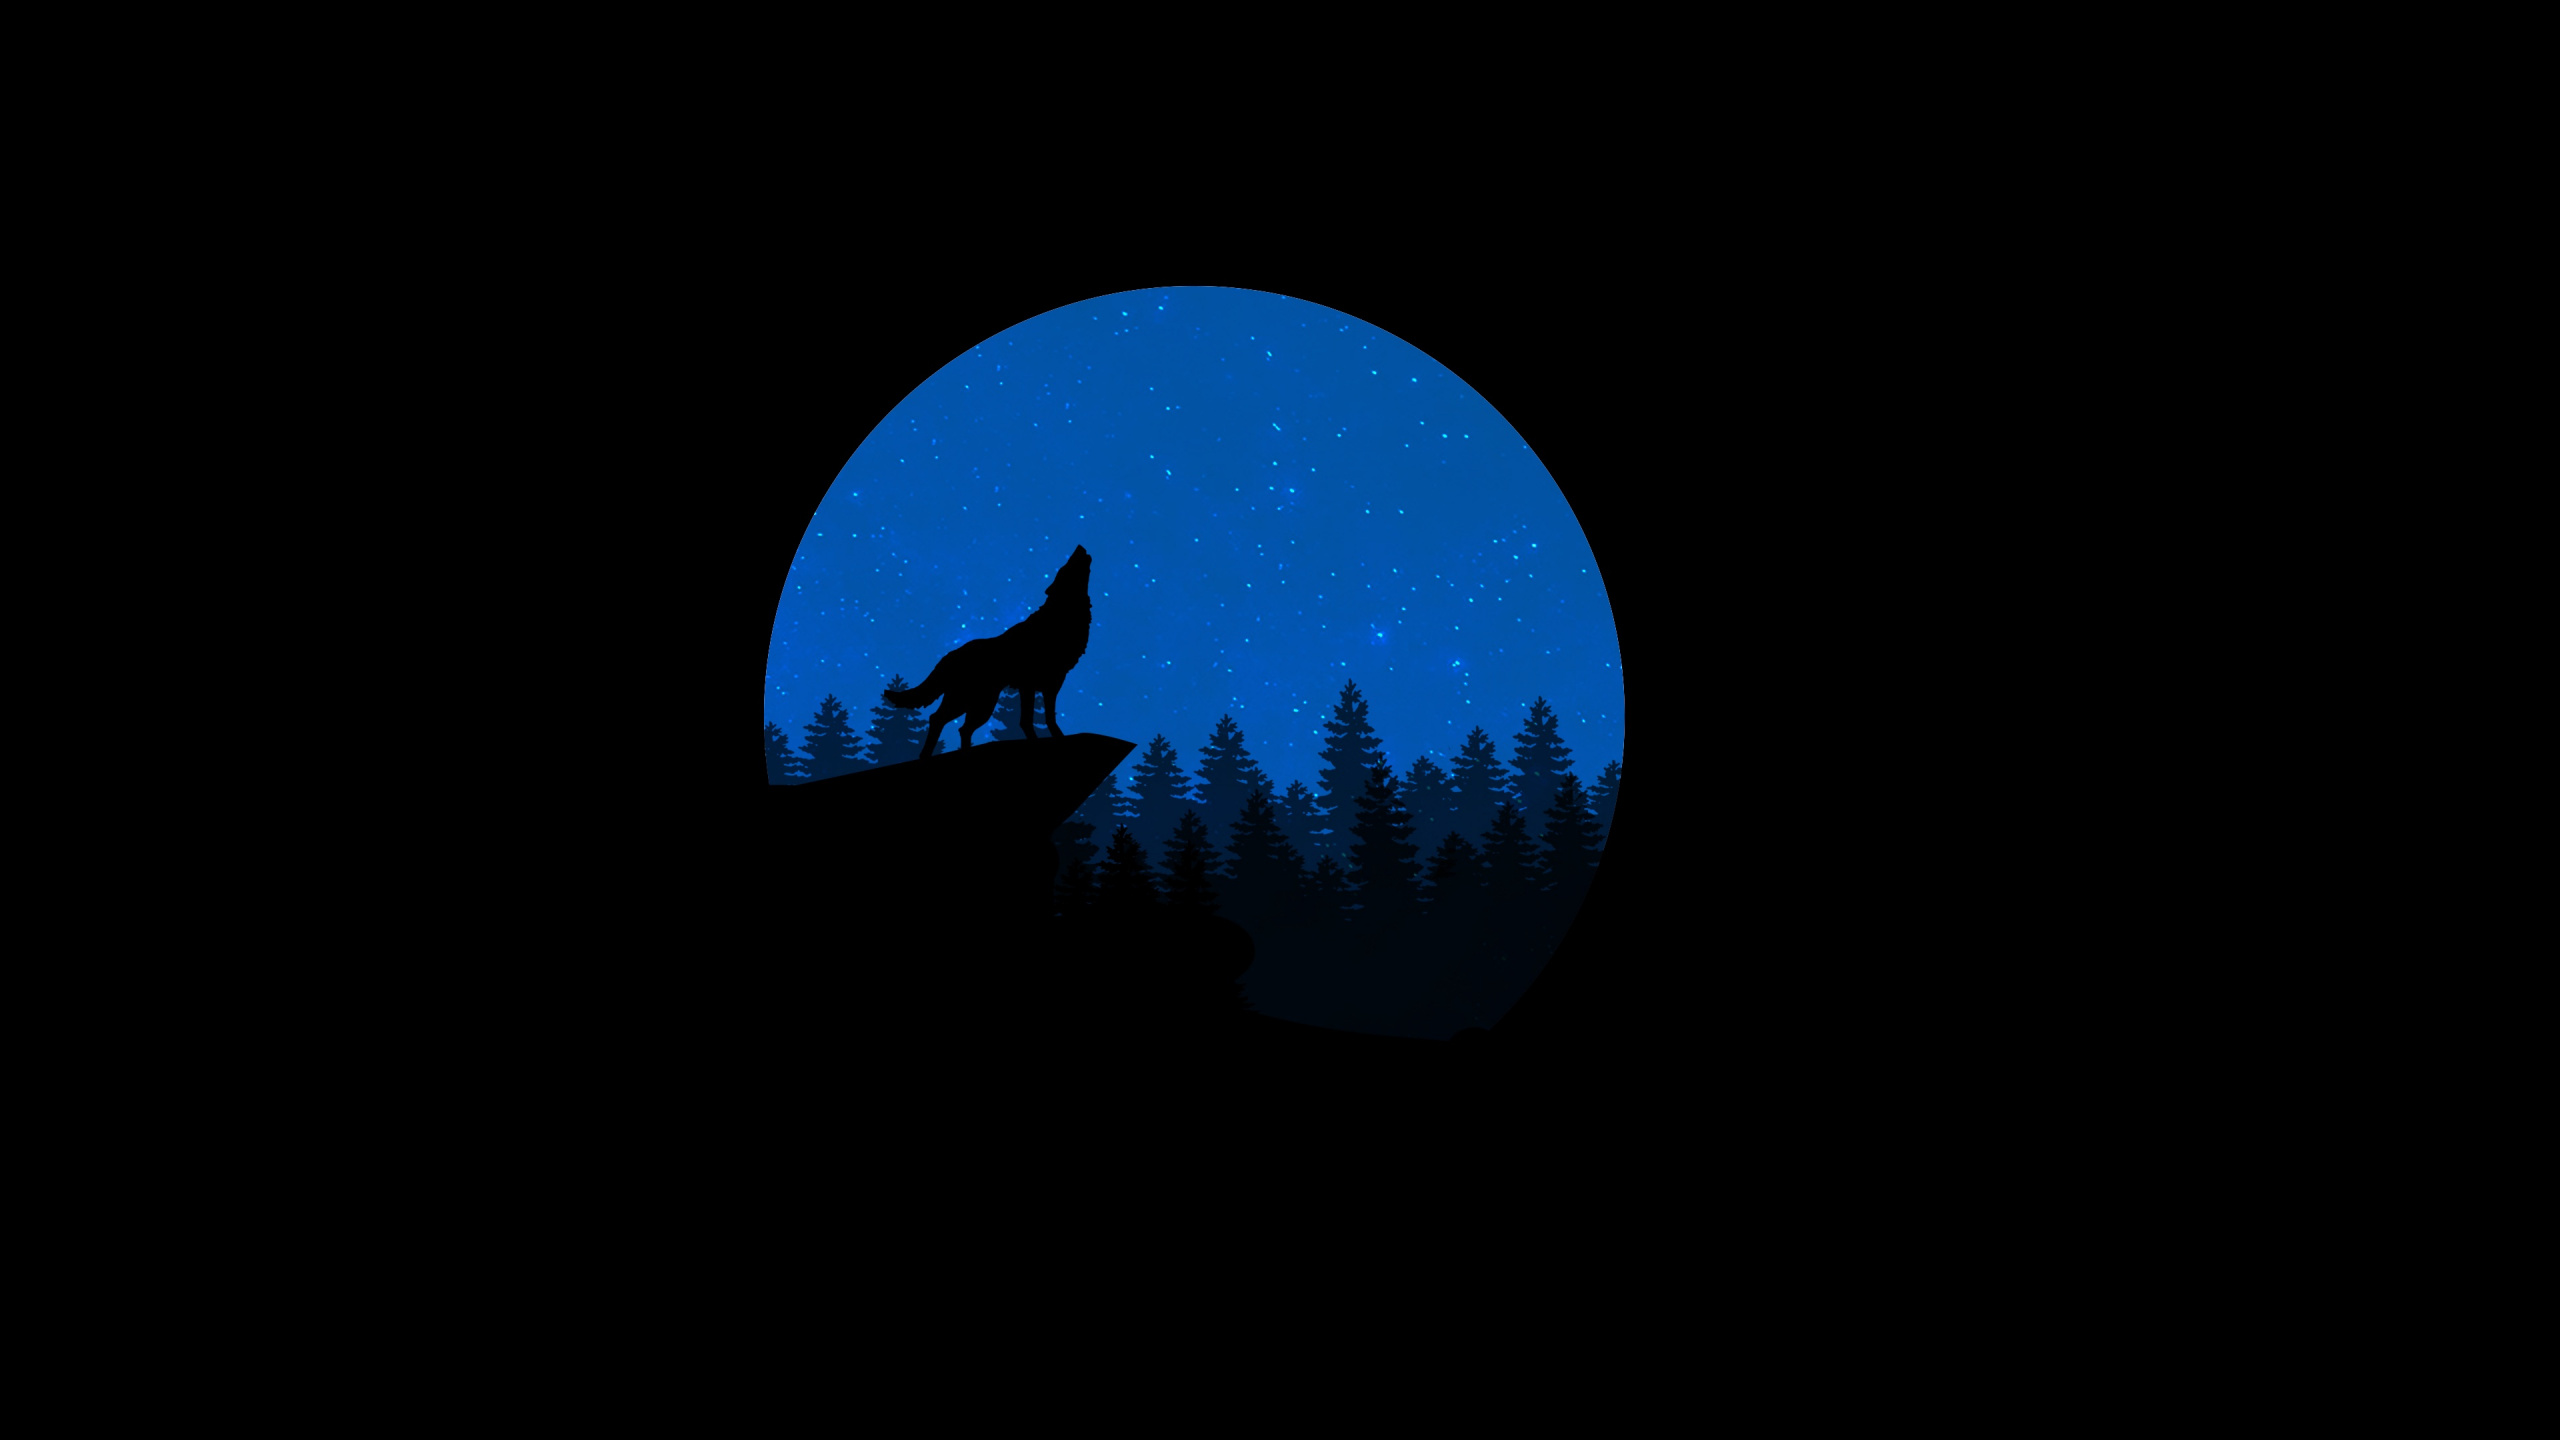 Silhouette Einer Person, Die Unter Blauem Mond Steht. Wallpaper in 2560x1440 Resolution